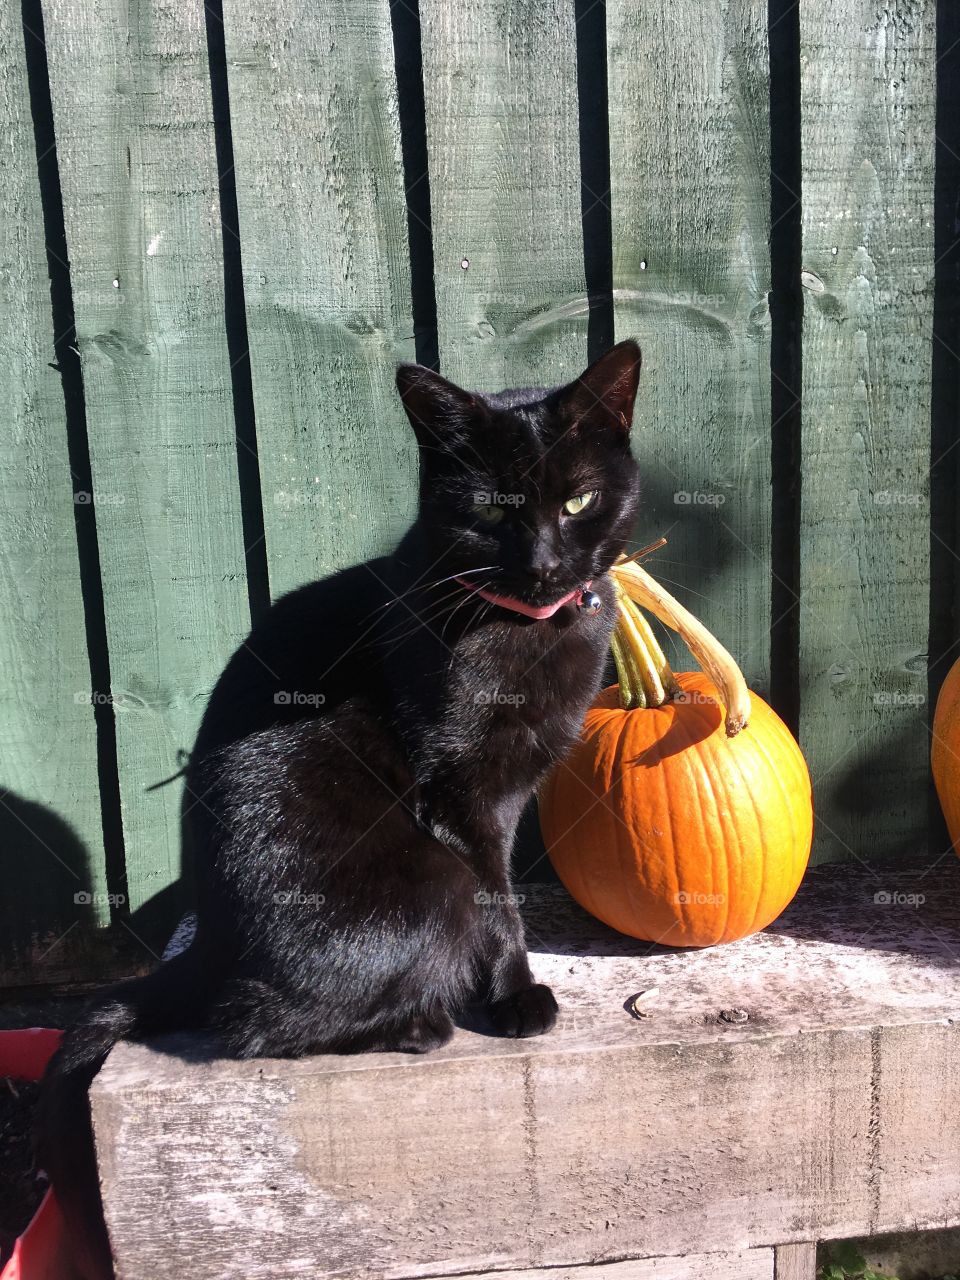 Cat & pumpkin or - Halloween definition 🤪